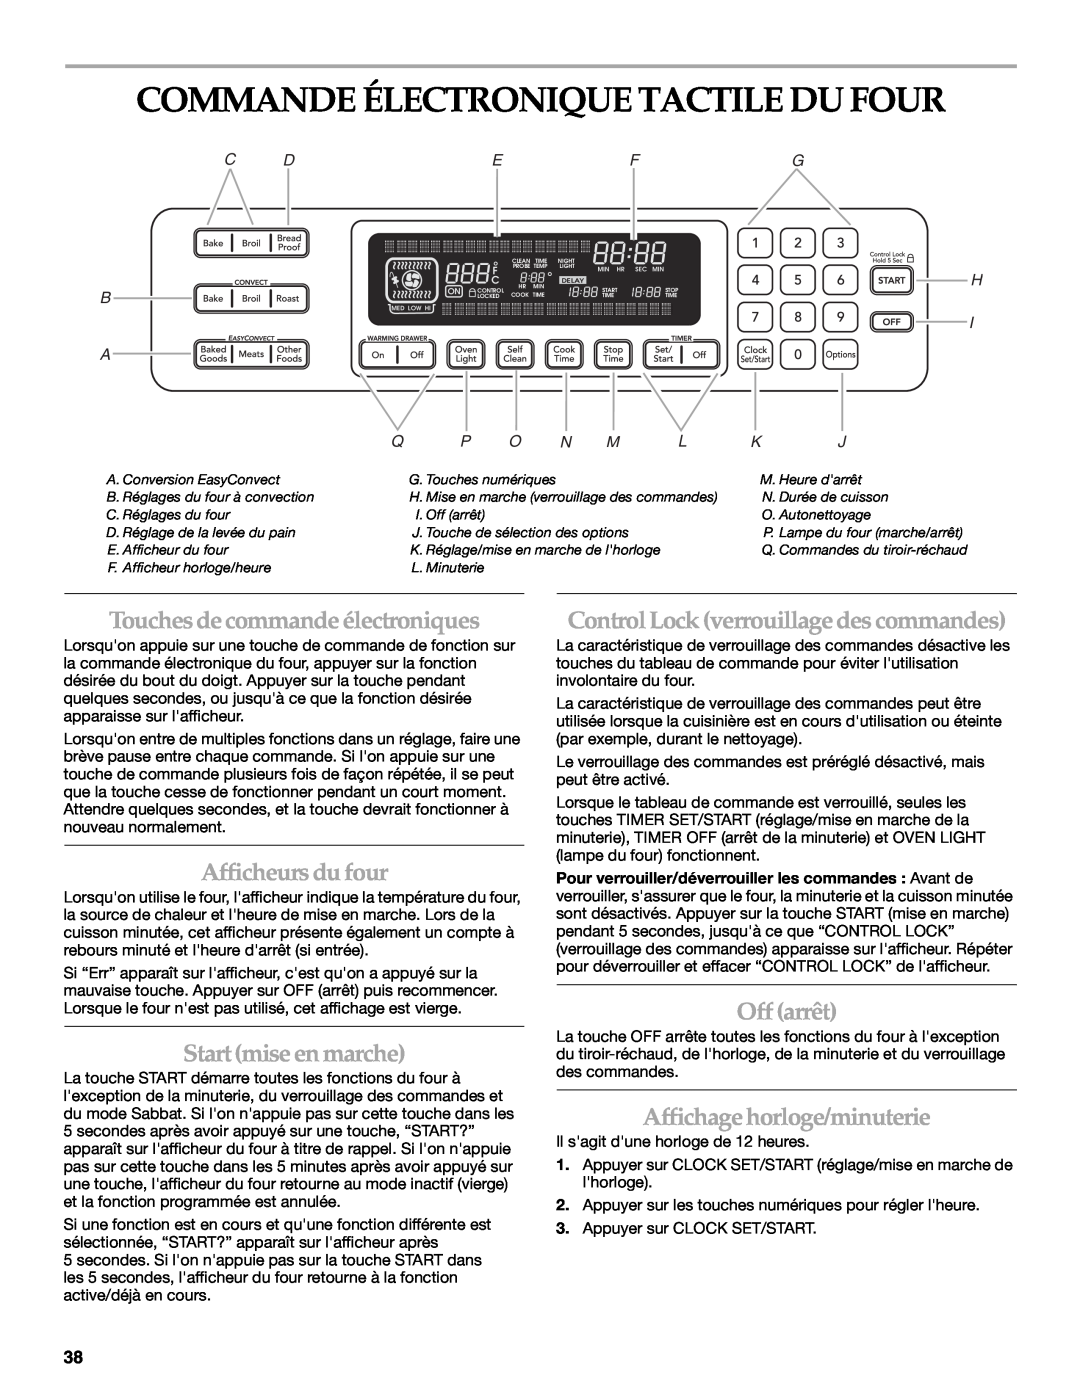 KitchenAid KDRS807 Commande Électronique Tactile Du Four, Touches de commande électroniques, Afficheurs du four, Off arrêt 